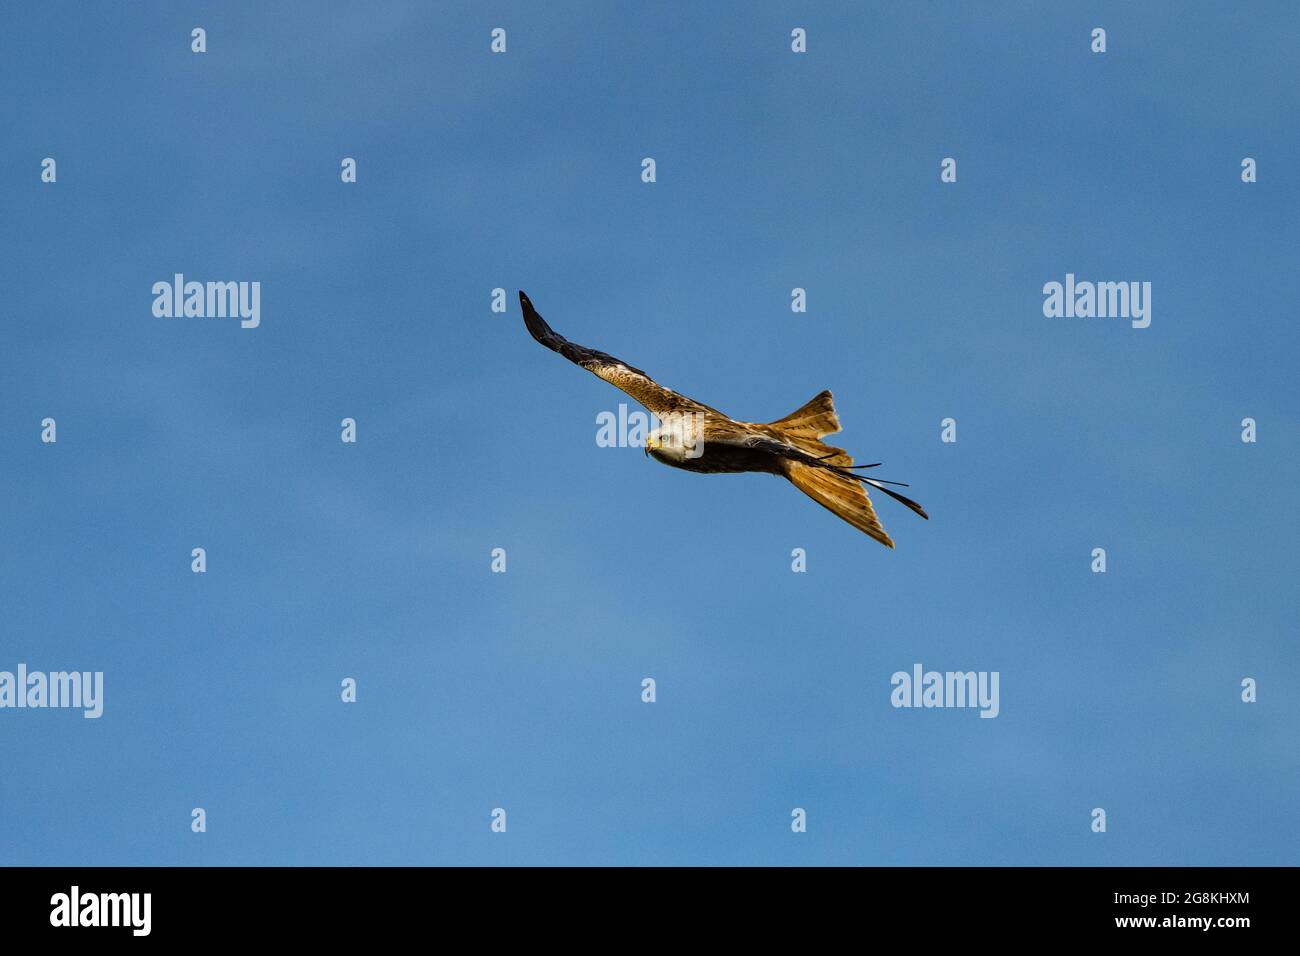 Cerf-volant rouge pris dans la lumière du soleil, dans un ciel bleu au-dessus du côté de la campagne anglaise Banque D'Images